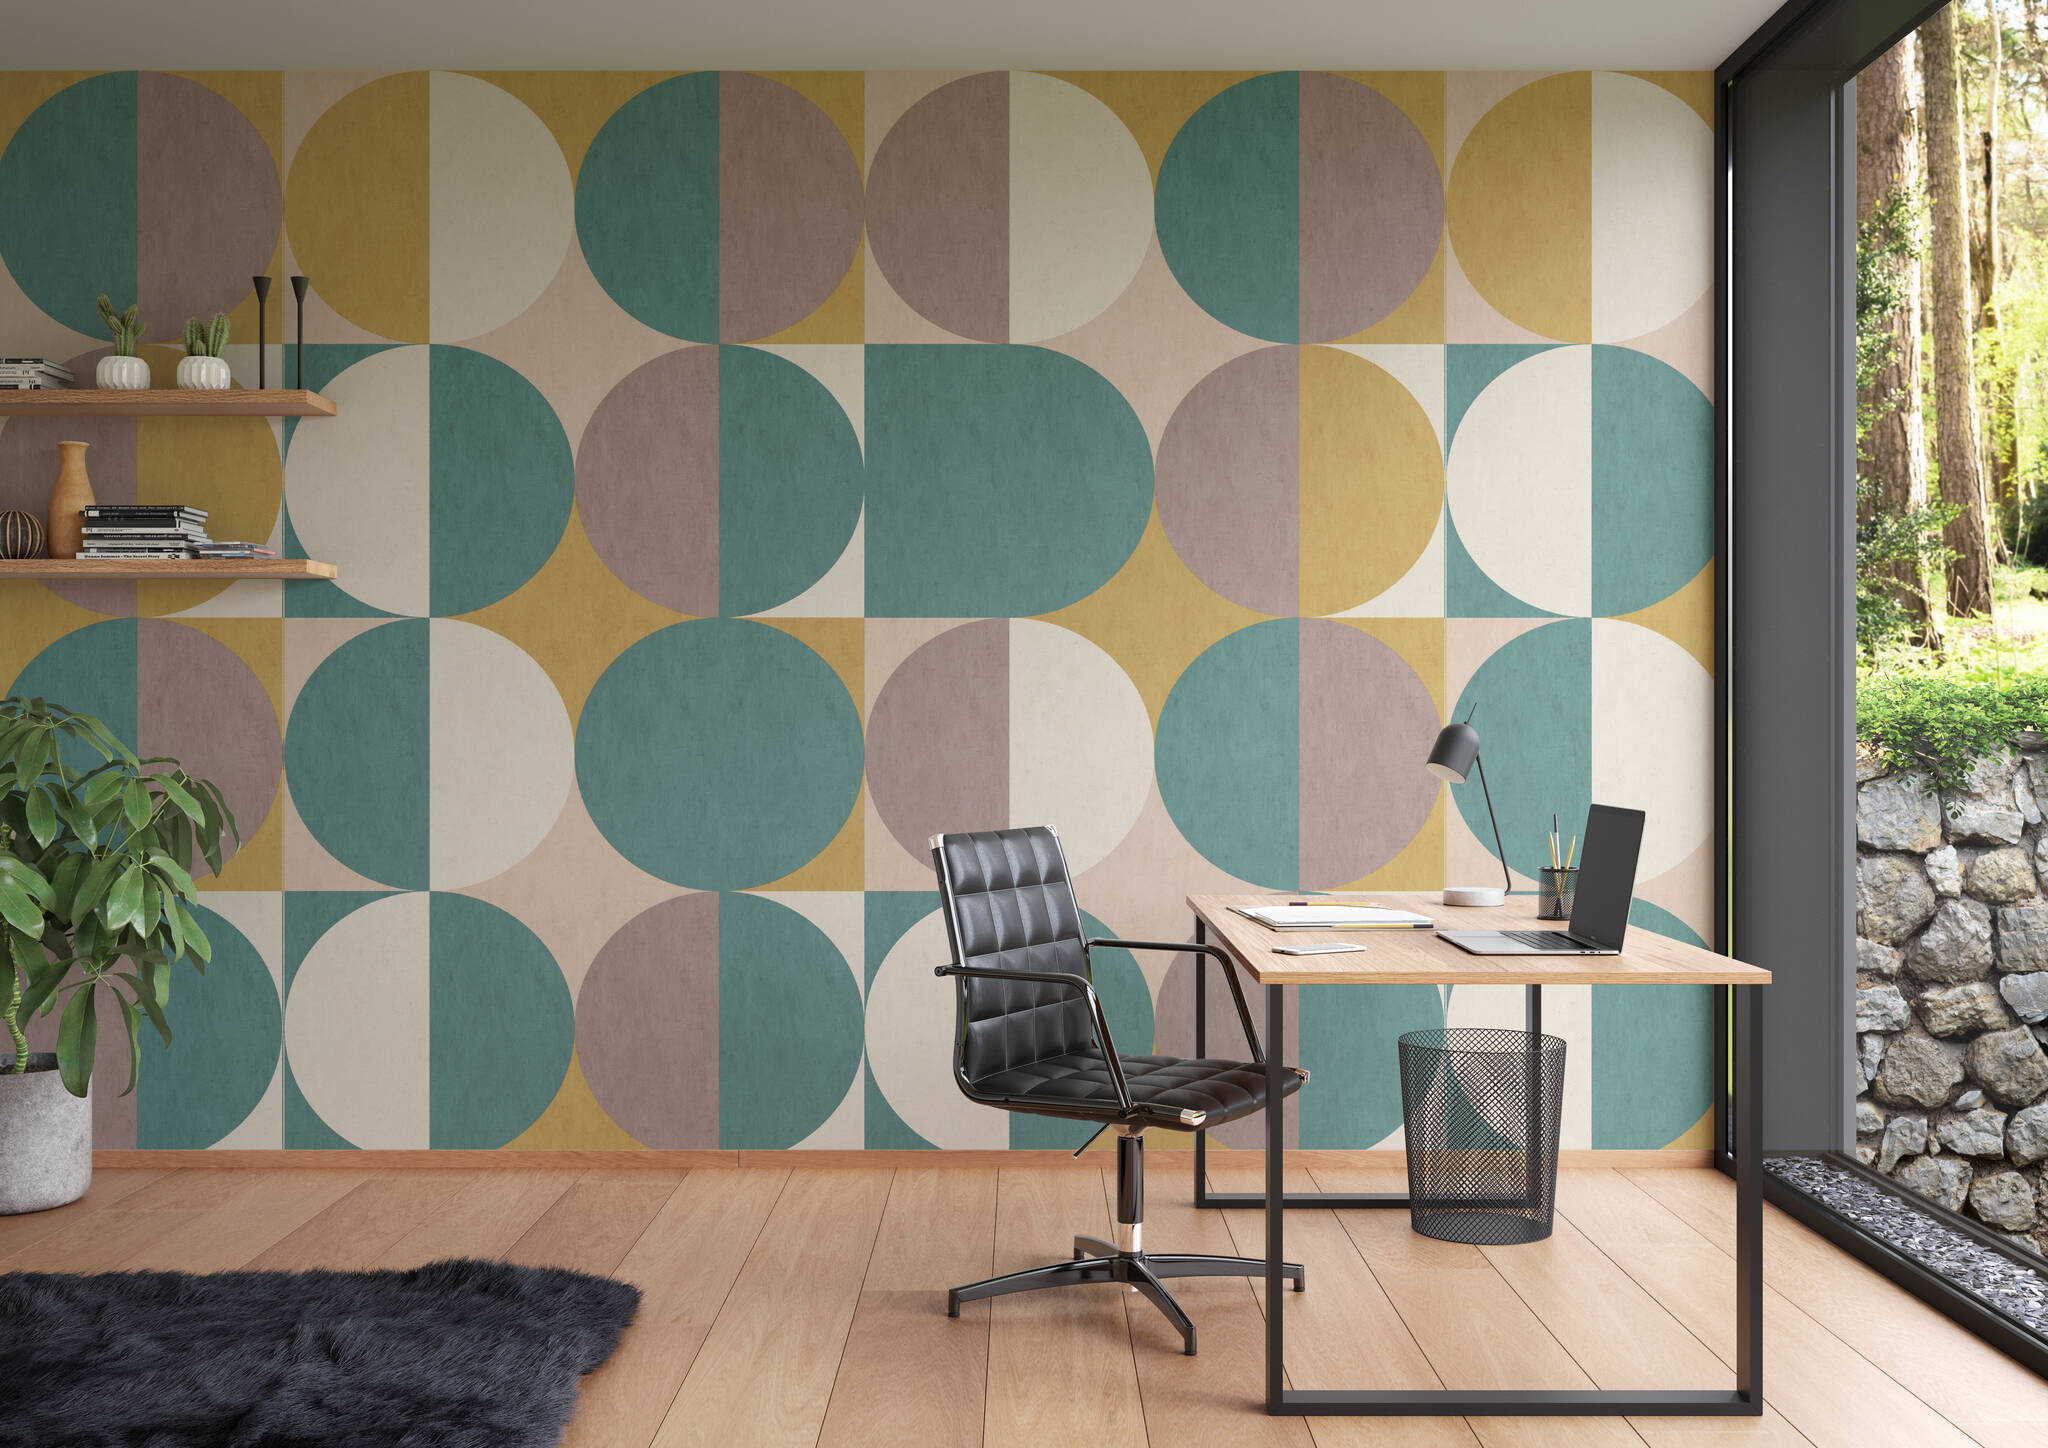 Arbeitszimmer mit Wandbild - Retro-Charme und doch modern - hier schließt sich der Kreis mit halbrunden Formen in Grau, Gelb & Grün